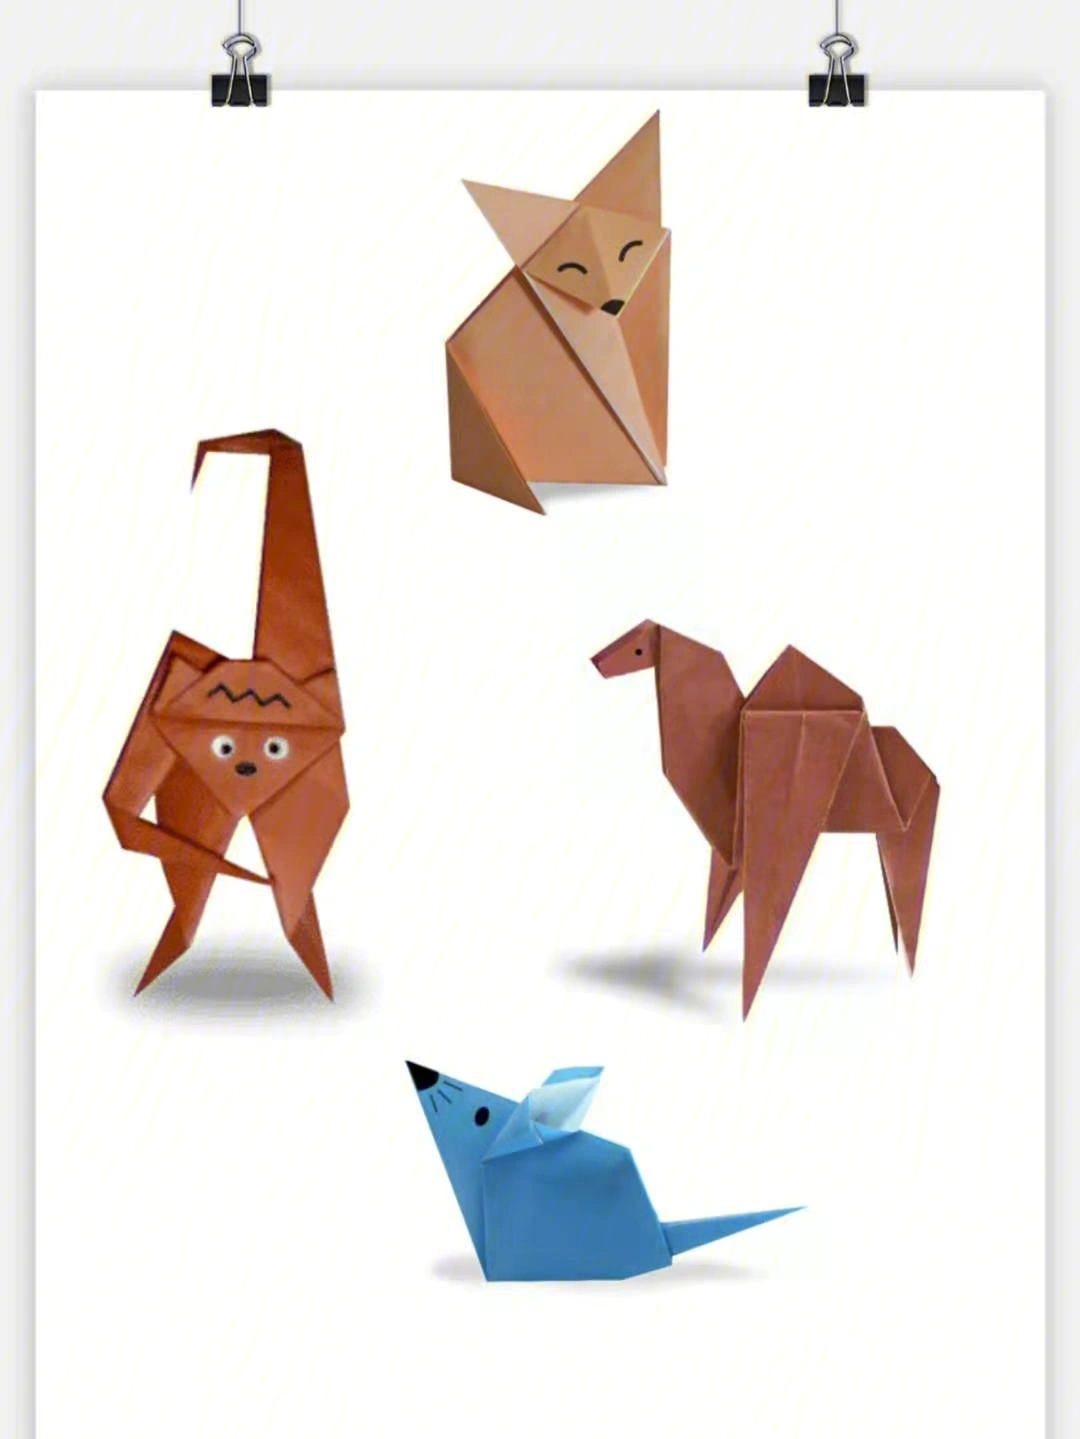 折纸系列之小动物